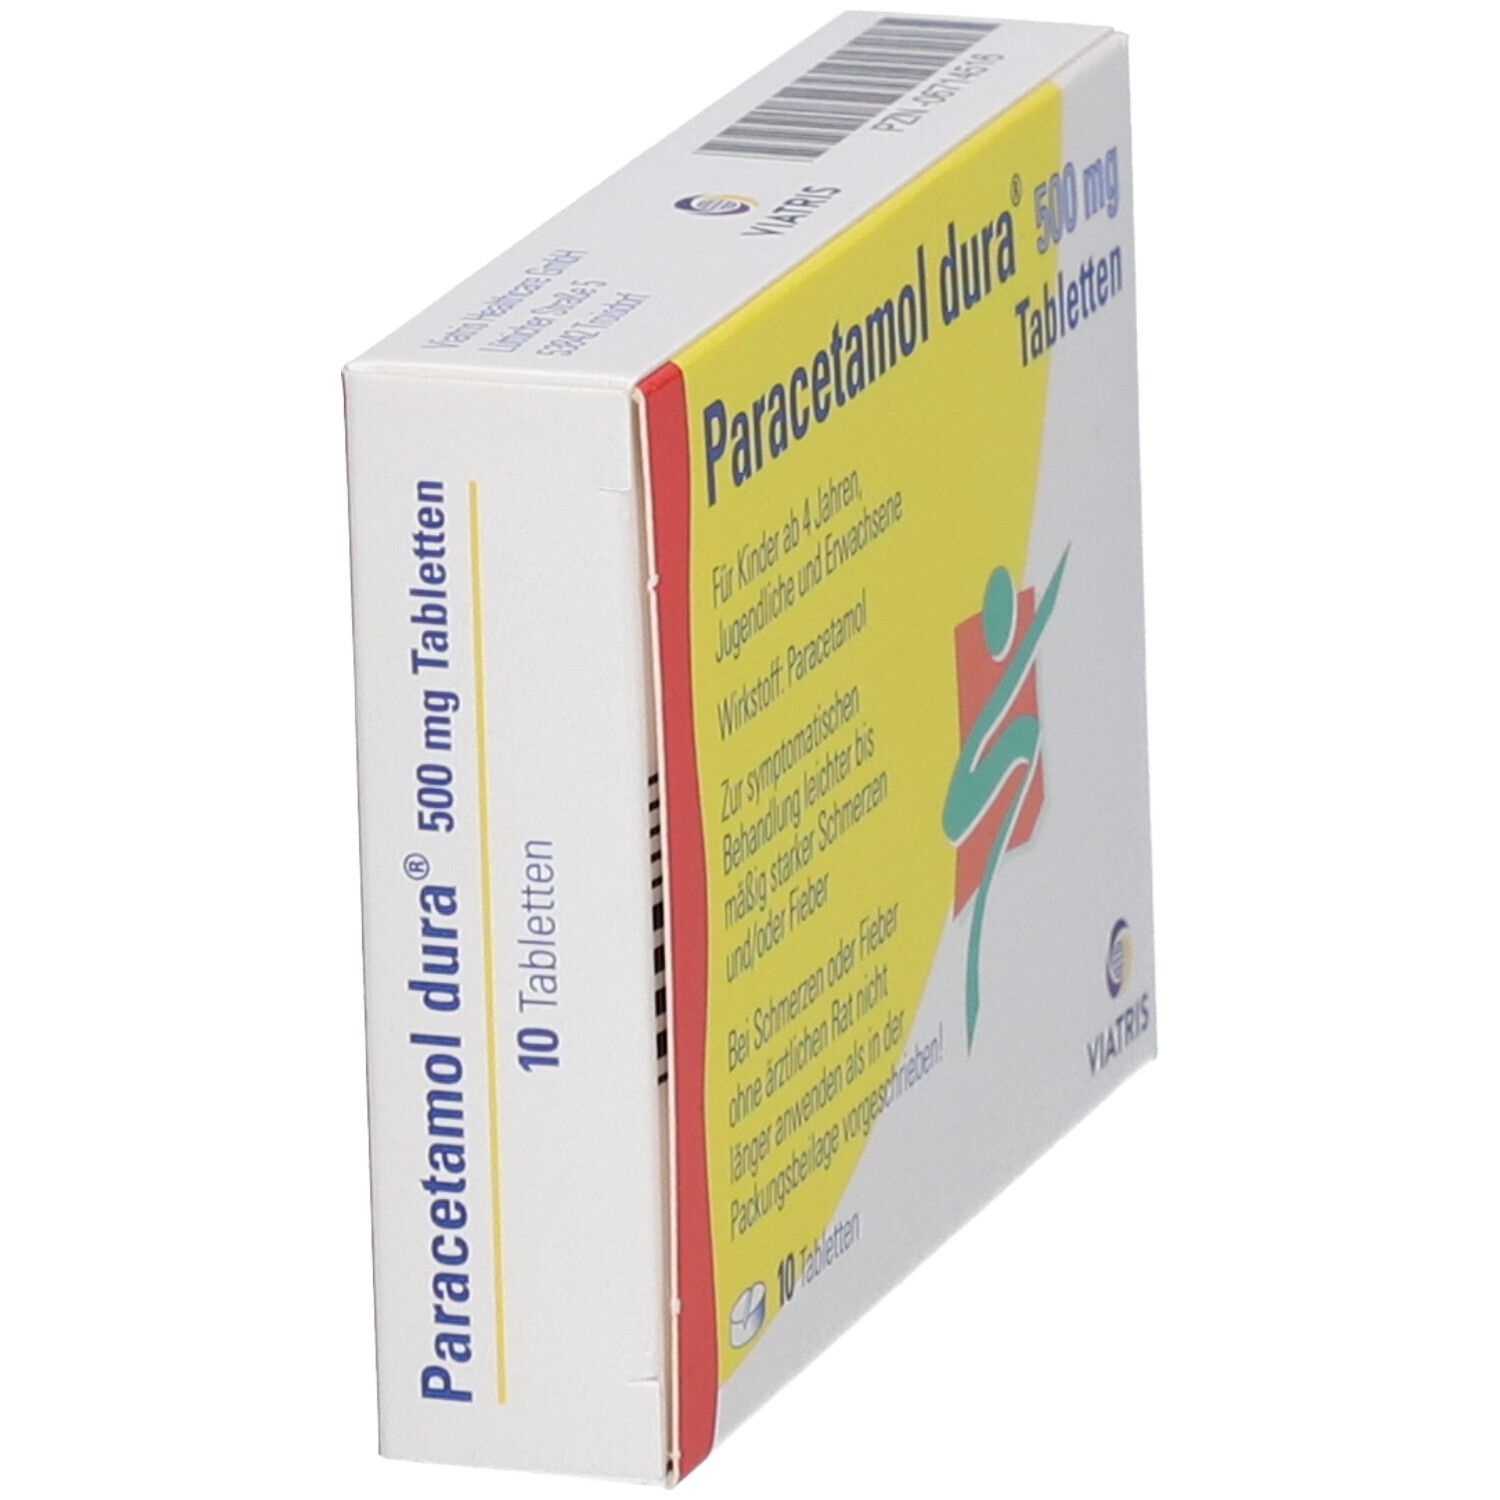 Paracetamol dura® 500 mg